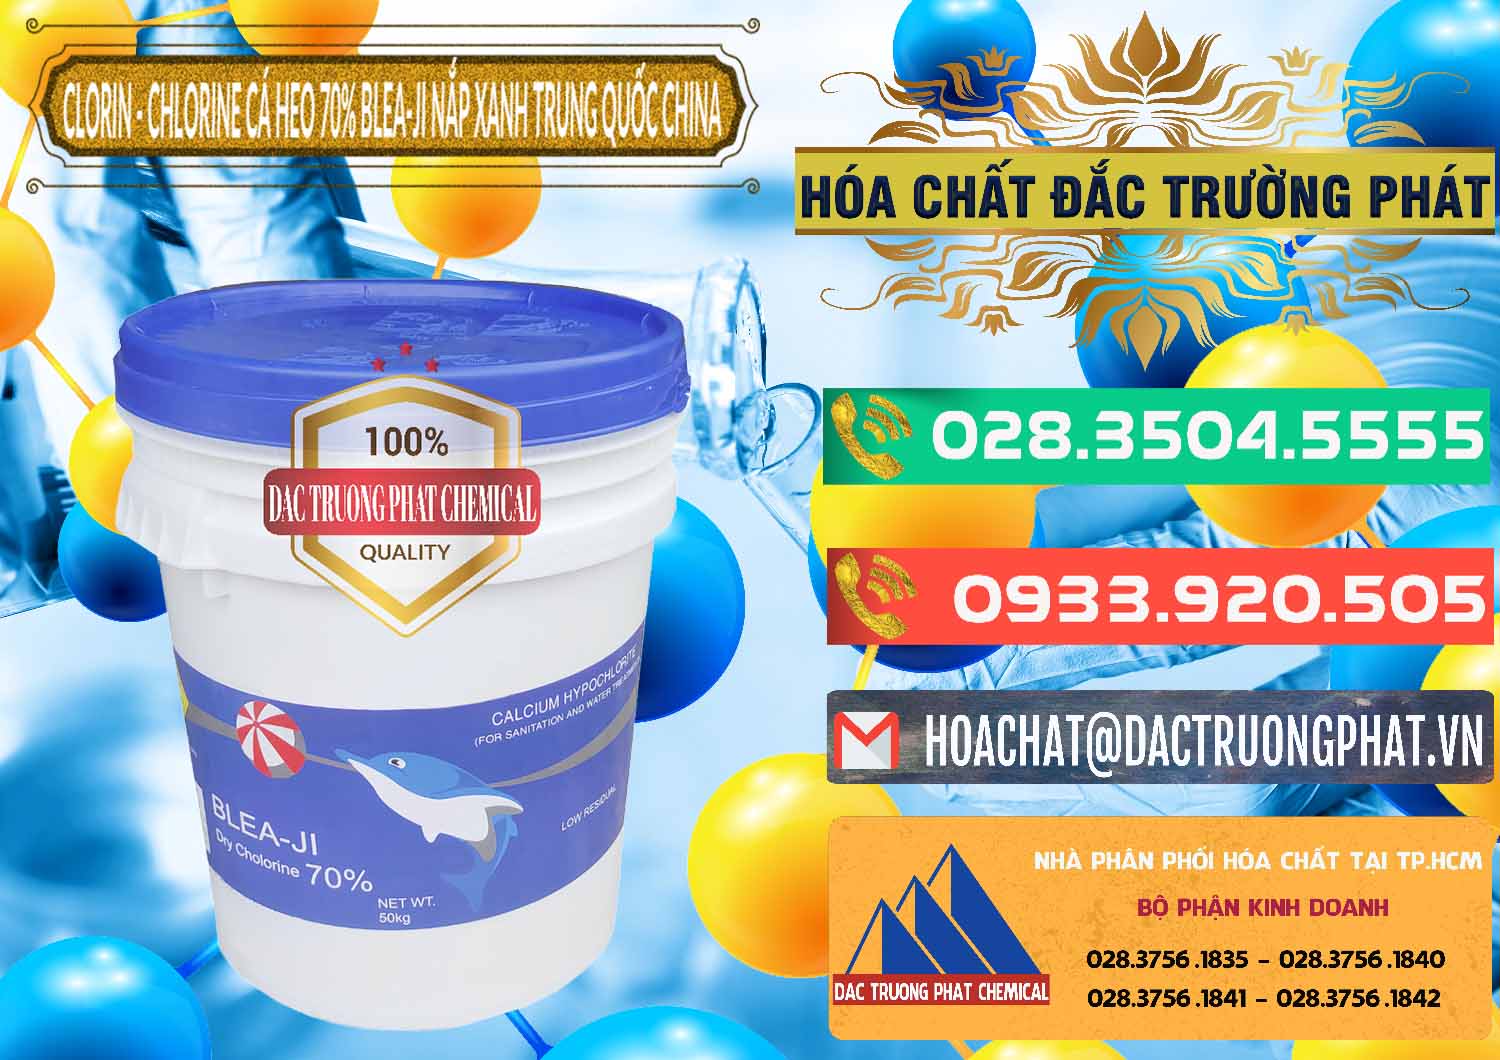 Đơn vị phân phối và bán Clorin - Chlorine Cá Heo 70% Cá Heo Blea-Ji Thùng Tròn Nắp Xanh Trung Quốc China - 0208 - Nơi chuyên cung cấp và bán hóa chất tại TP.HCM - congtyhoachat.com.vn